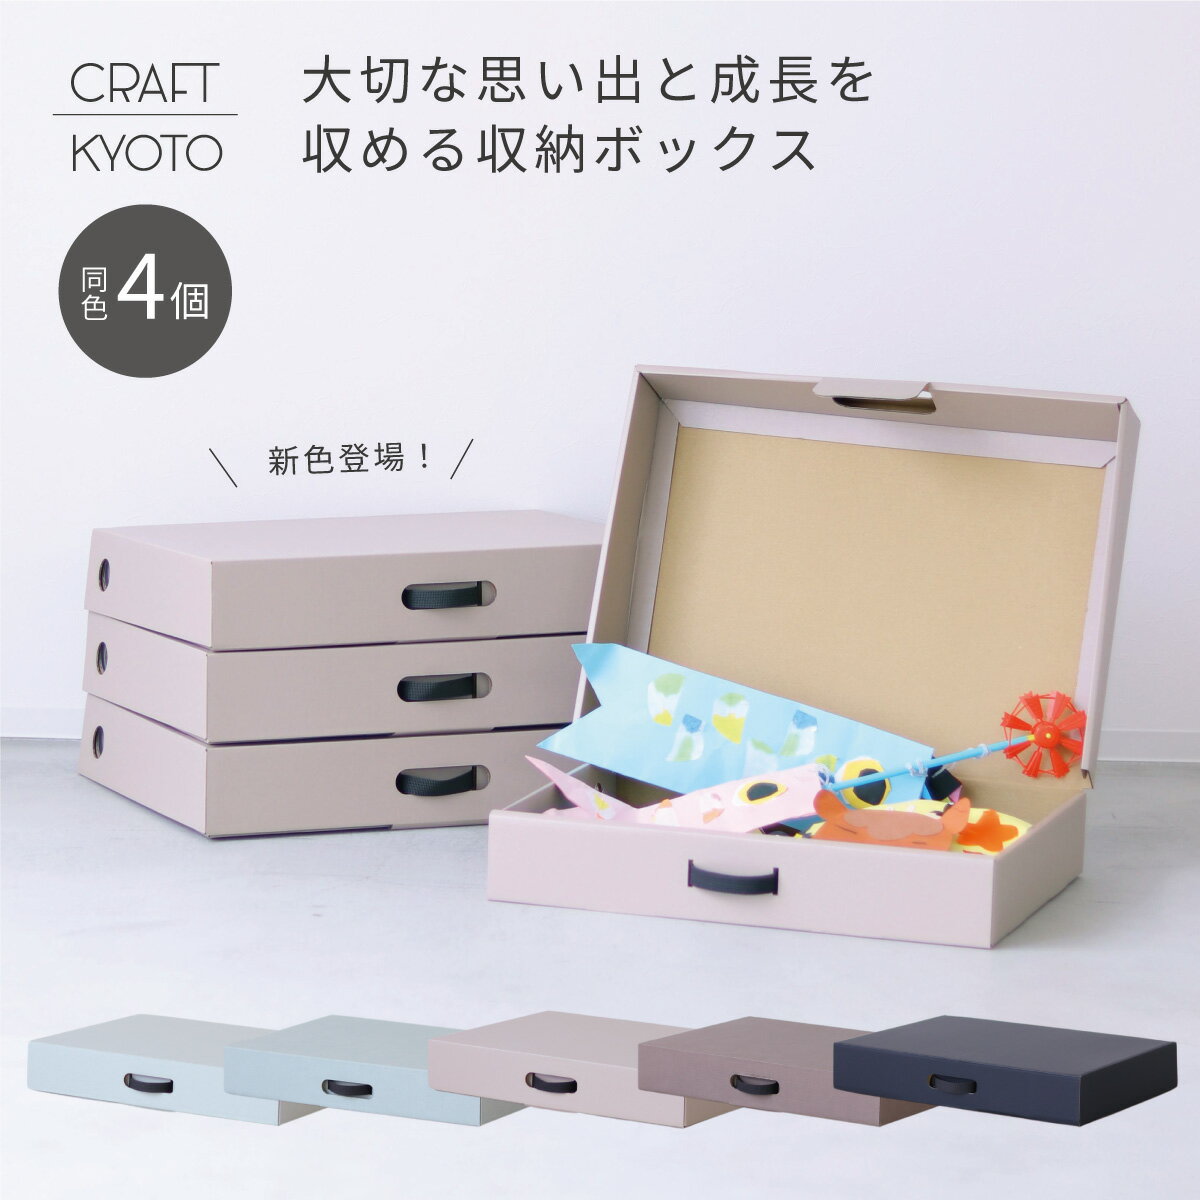 【新色新発売】EC限定 CRAFT+ メモリアル収納ボックス